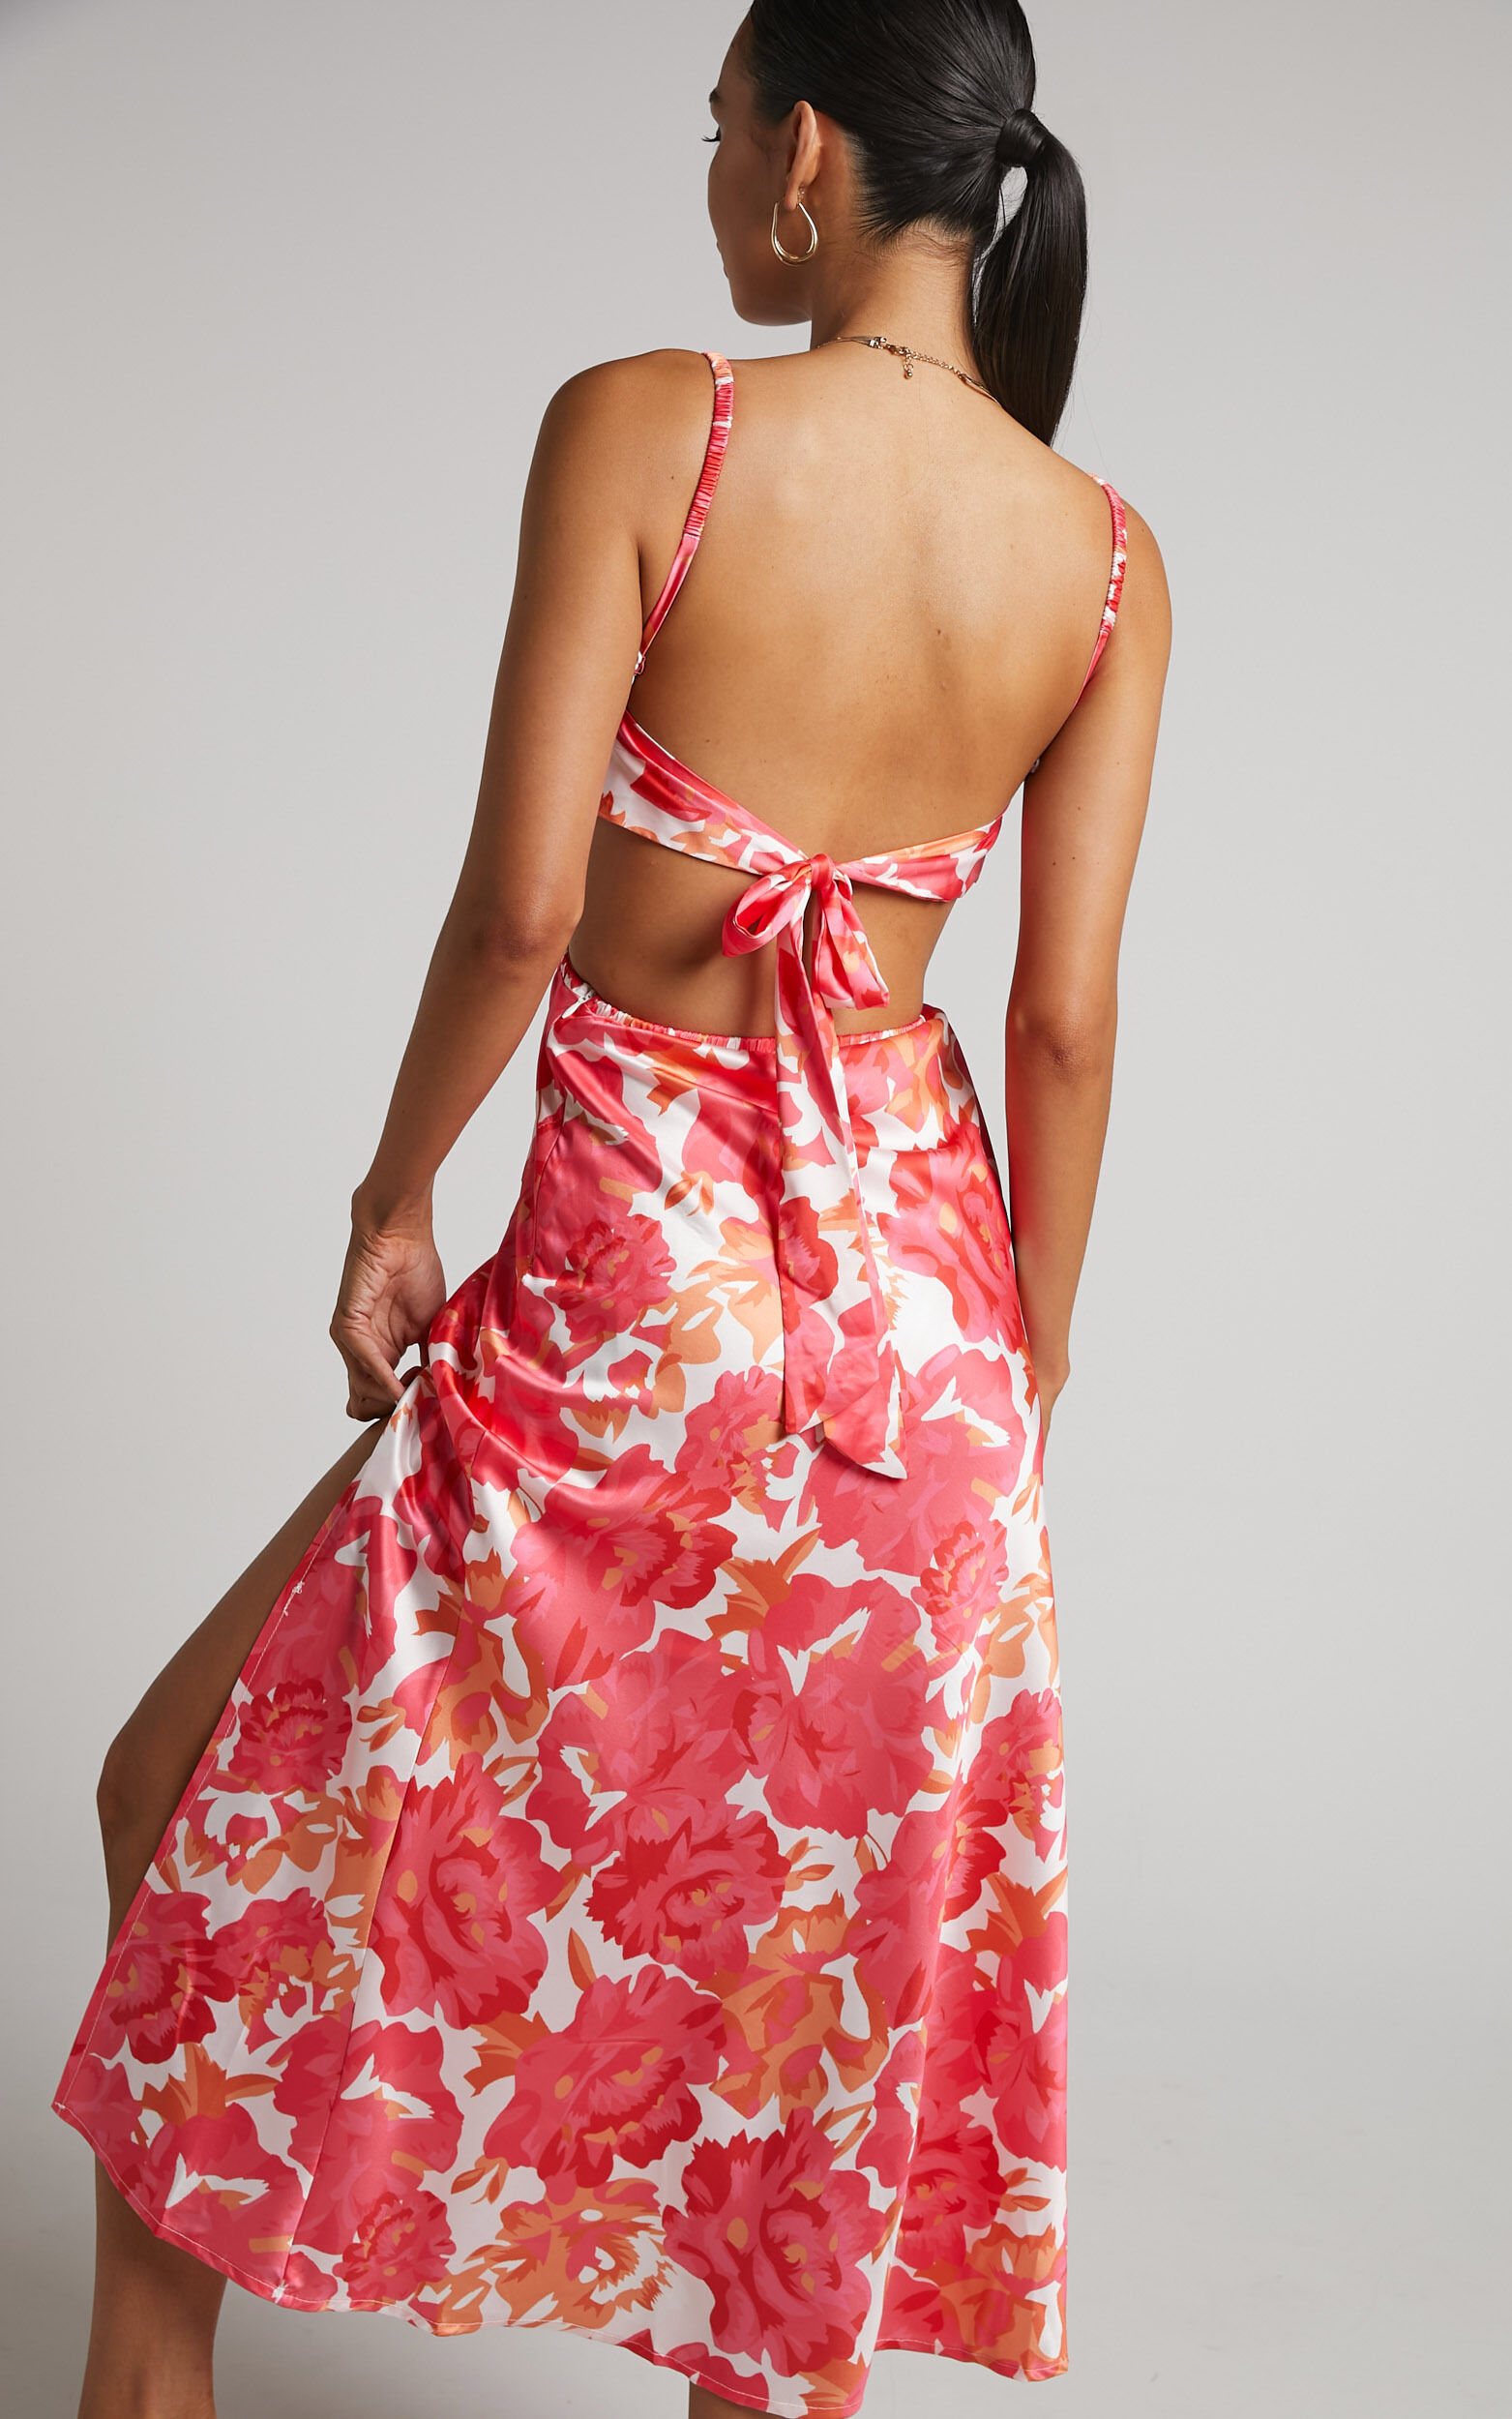 Loran Midi Dress - Cowl Neck Satin Slip Dress in Peony Blossom